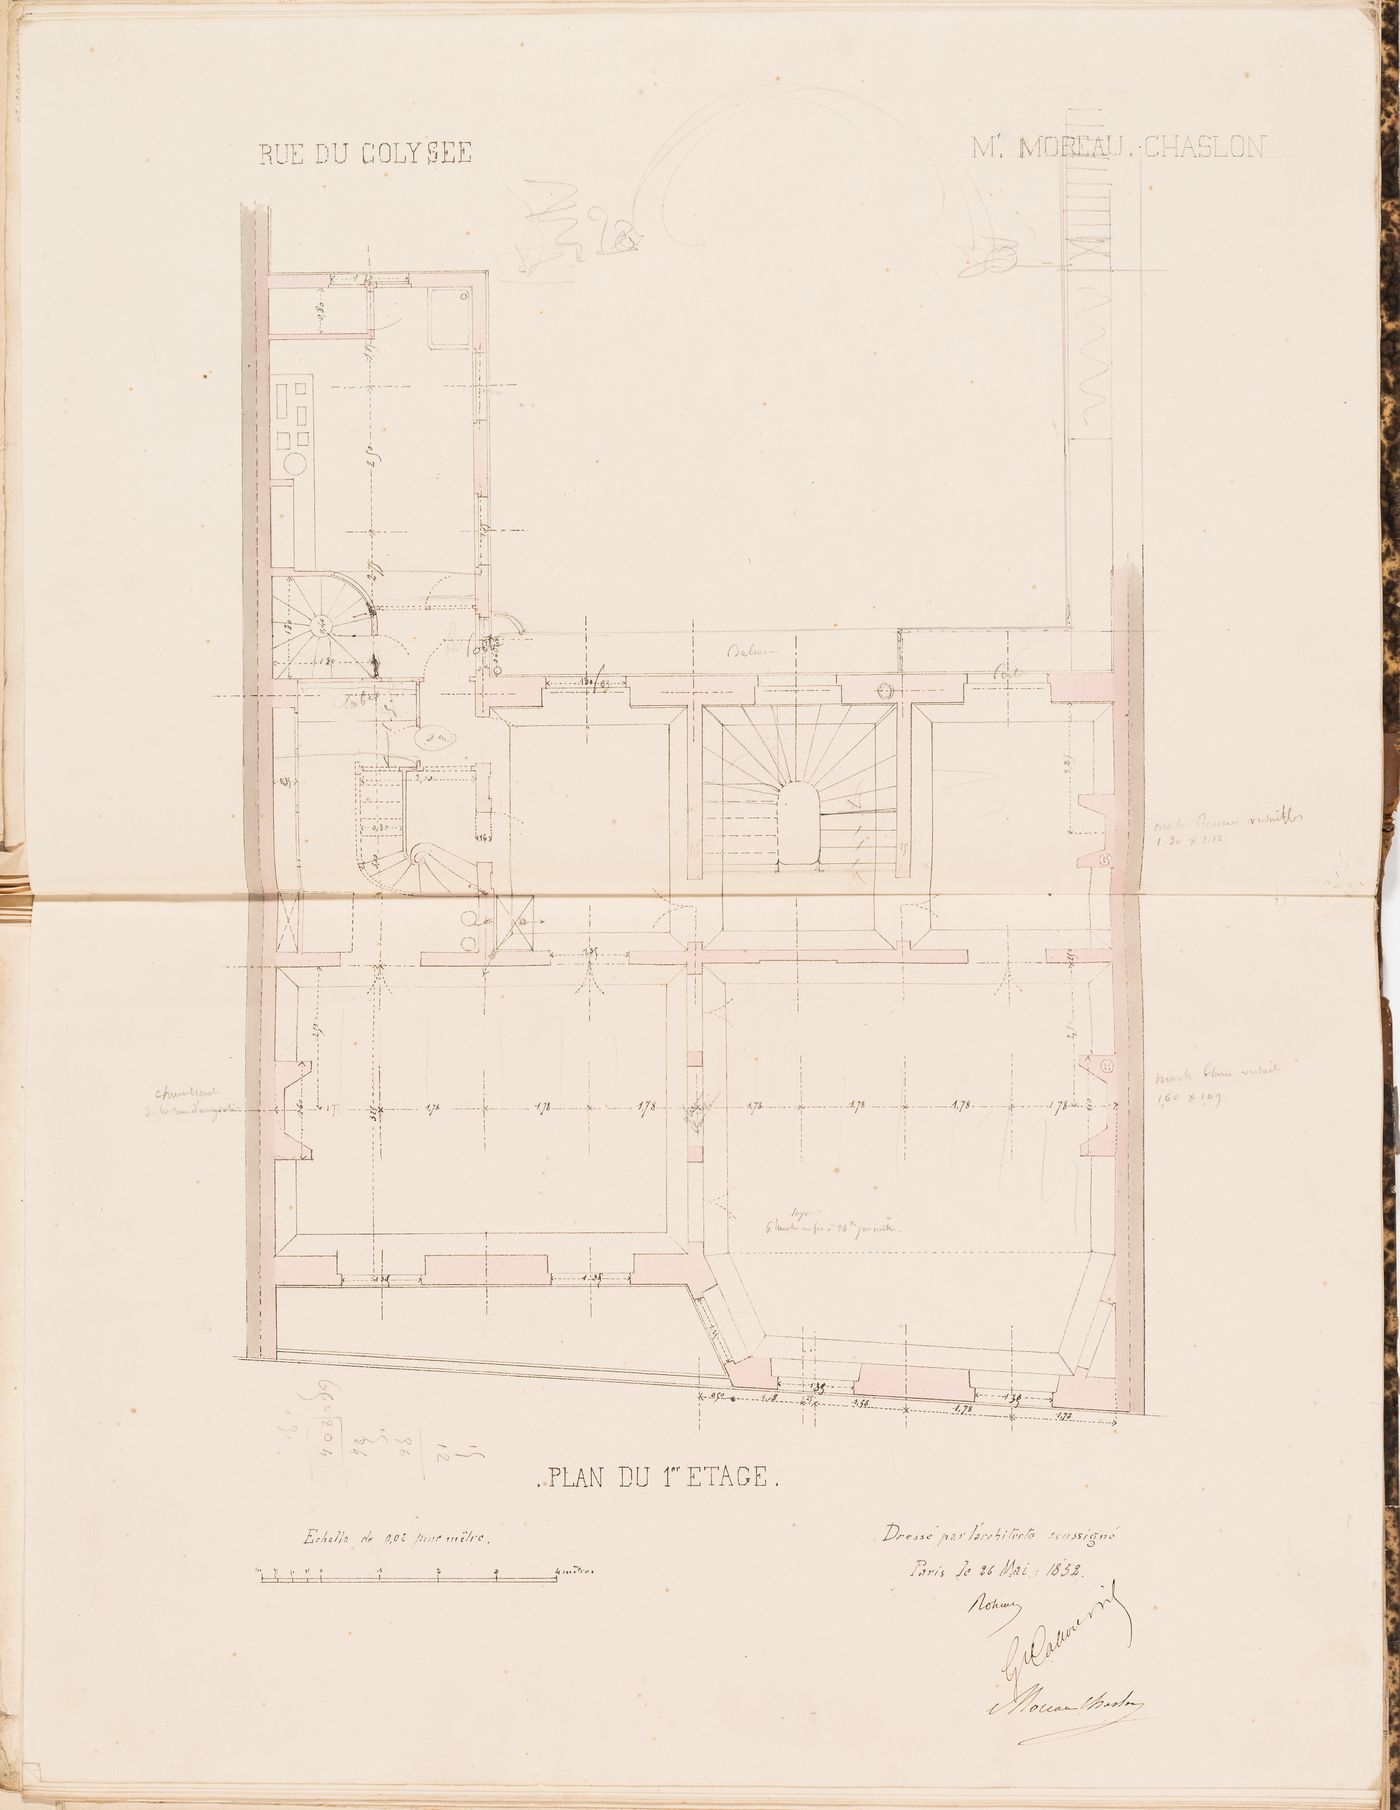 Contract drawings for a house for Monsieur Moreau Chaslon, rue du Colysée, Paris: First floor plan